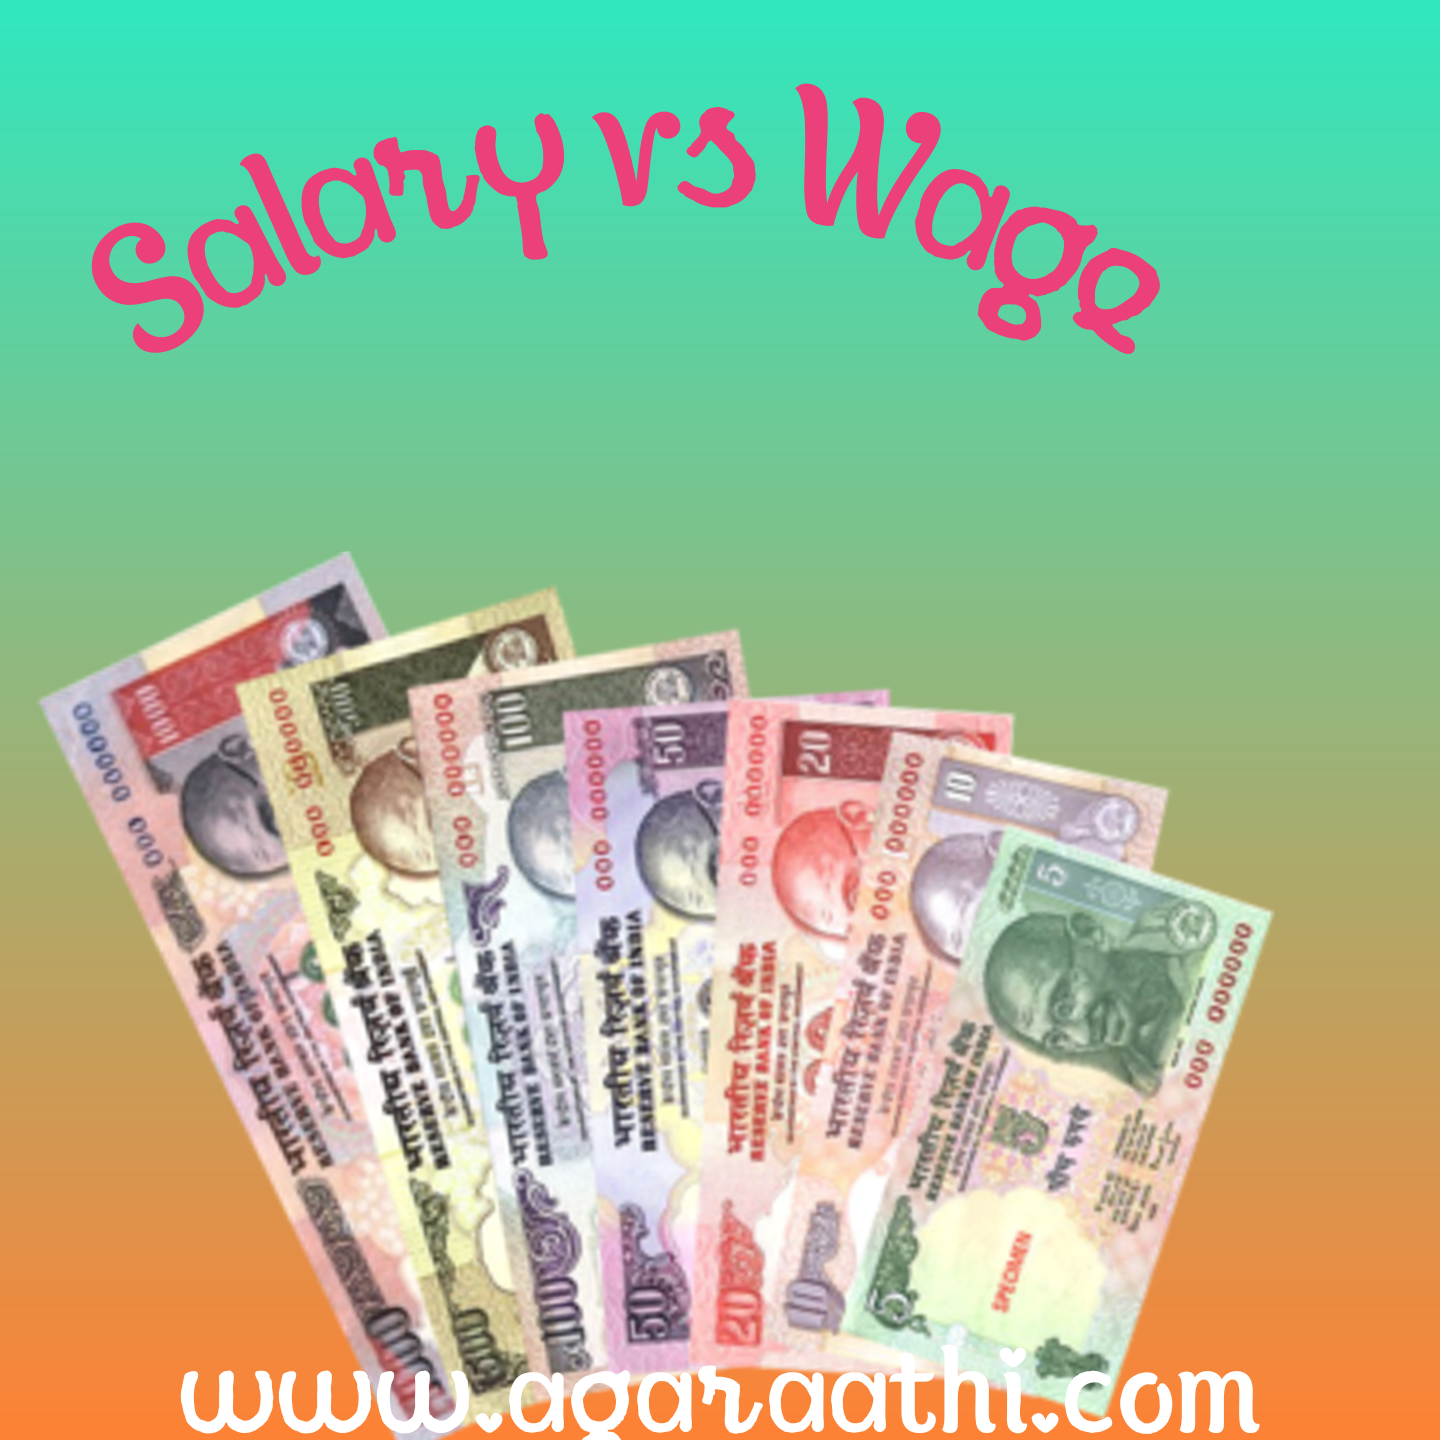 சம்பளத்திற்கும் ஊதியத்திற்கும் என்ன வித்தியாசம் ? |What is the Difference Between salary & wage?